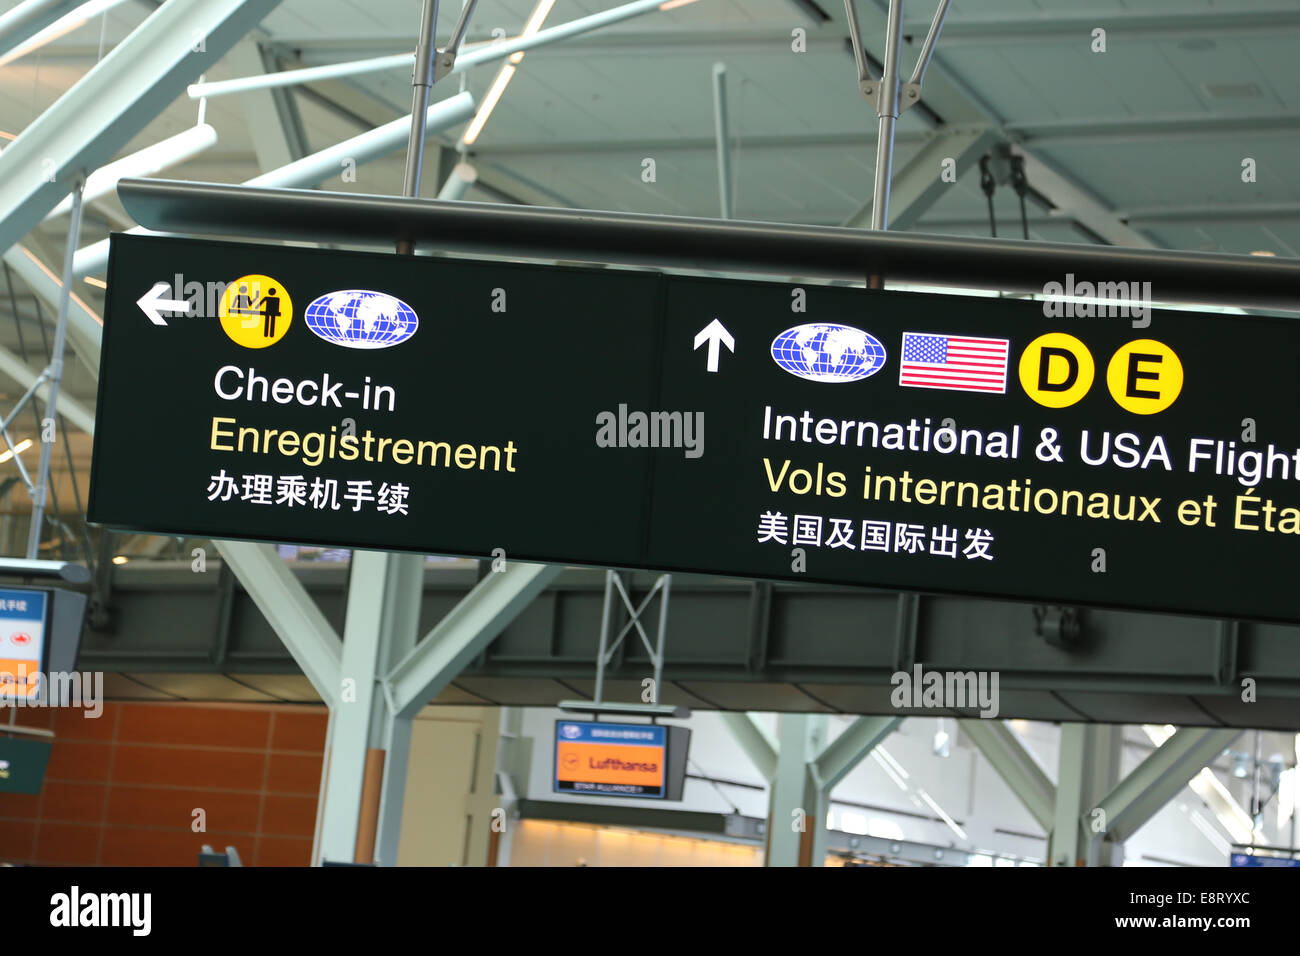 Vérifier en vol international,USA et signer à l'intérieur de l'aéroport YVR. Banque D'Images